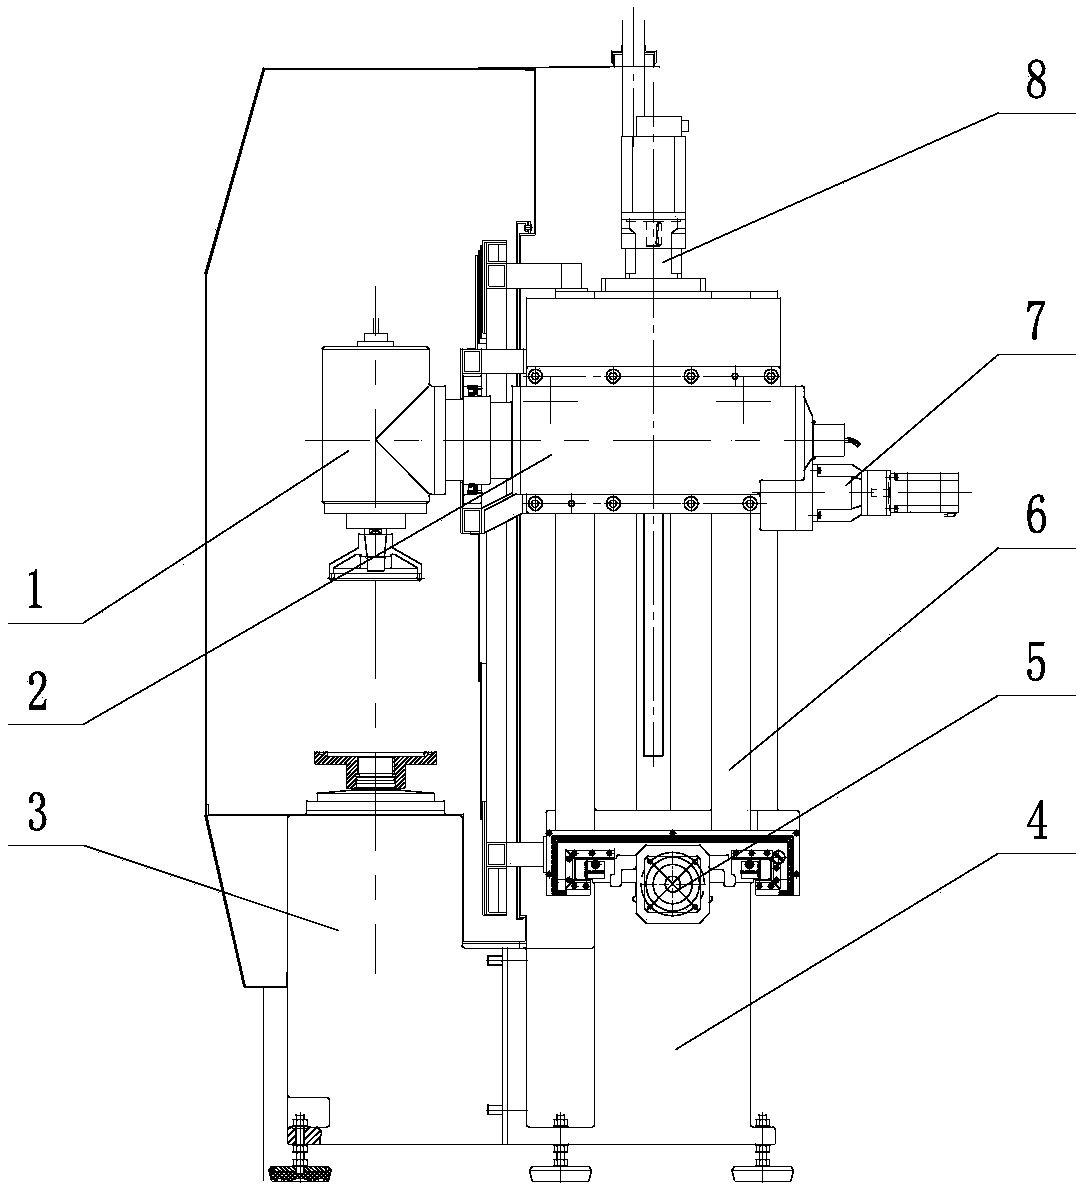 A CNC pendulum milling machine